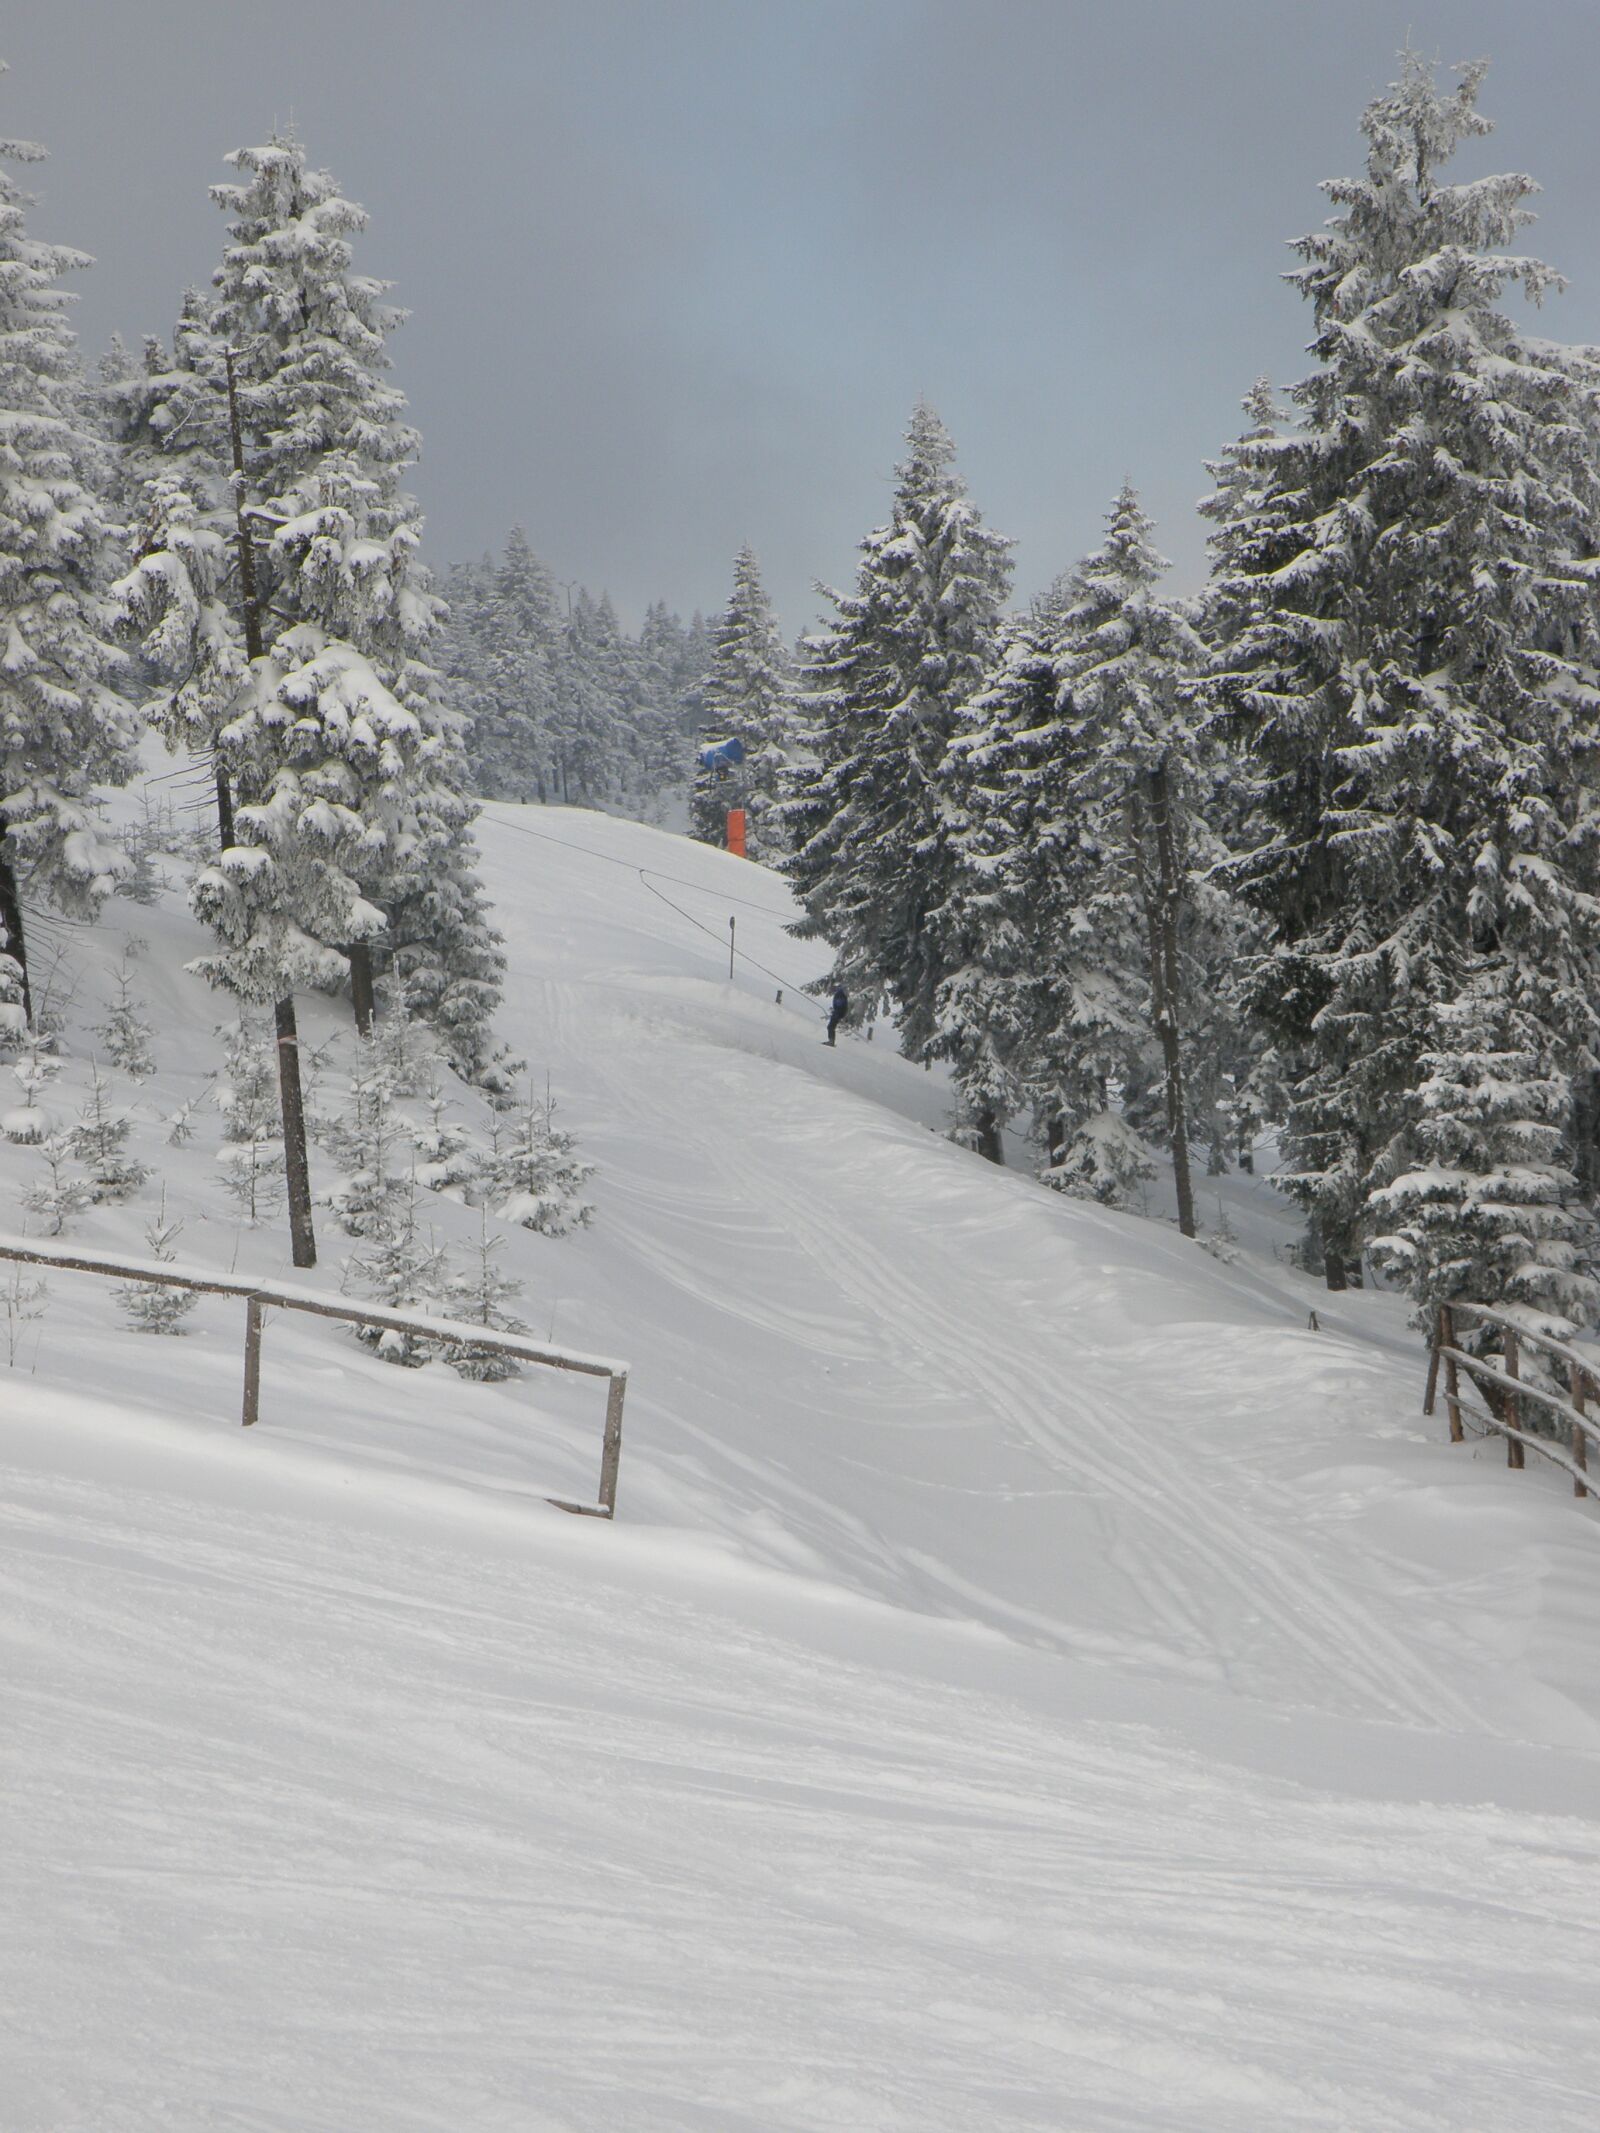 Olympus SP570UZ sample photo. The ski slope, winter photography